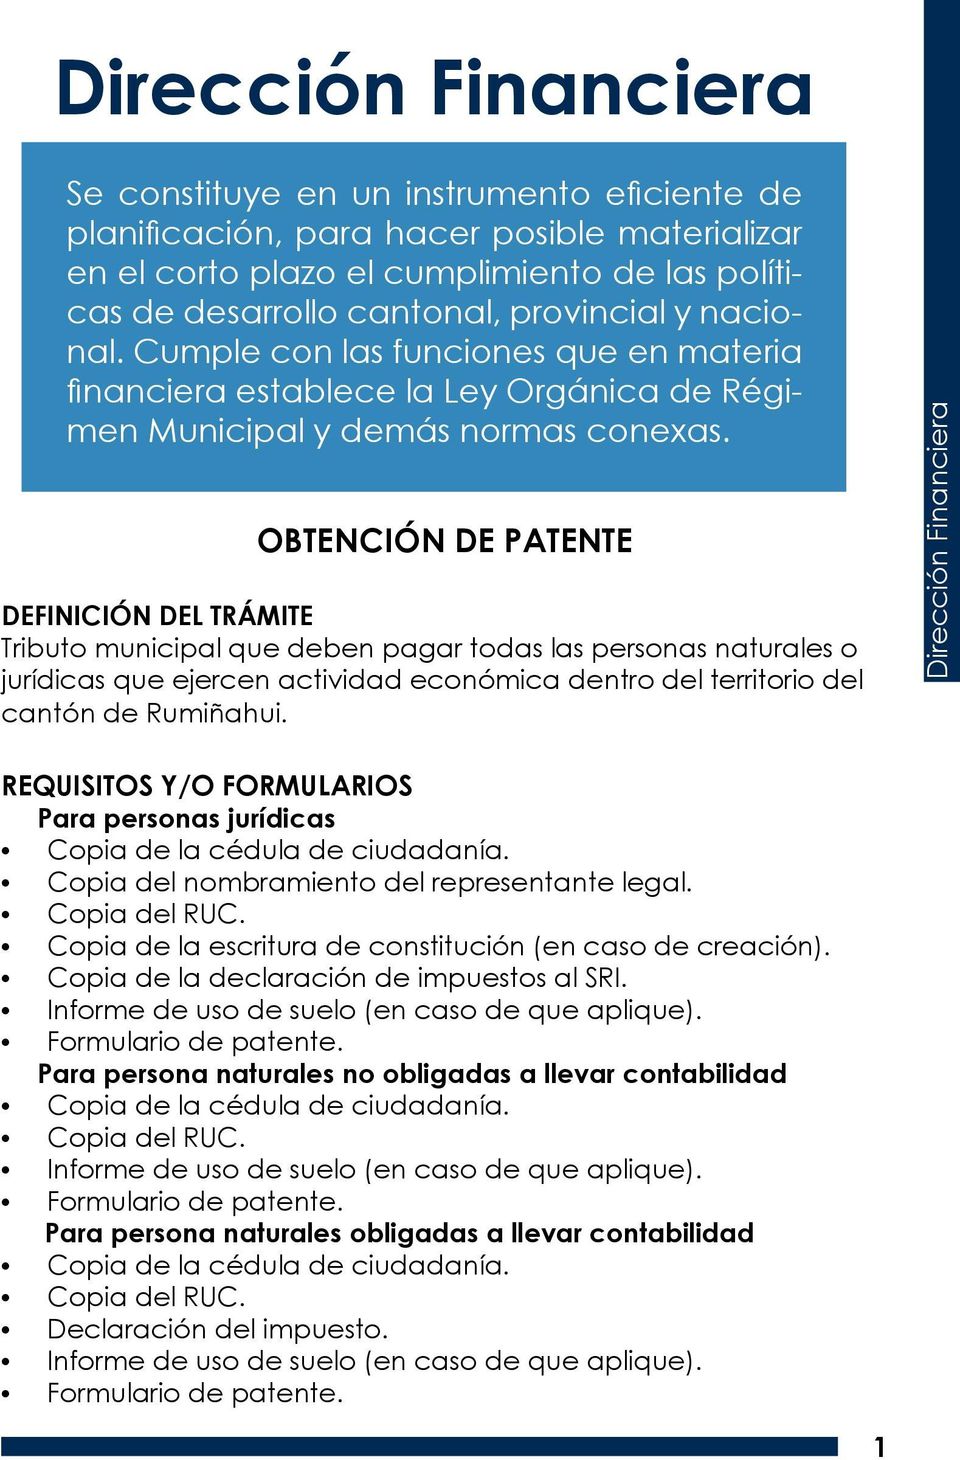 OBTENCIÓN DE PATENTE Tributo municipal que deben pagar todas las personas naturales o jurídicas que ejercen actividad económica dentro del territorio del cantón de Rumiñahui.